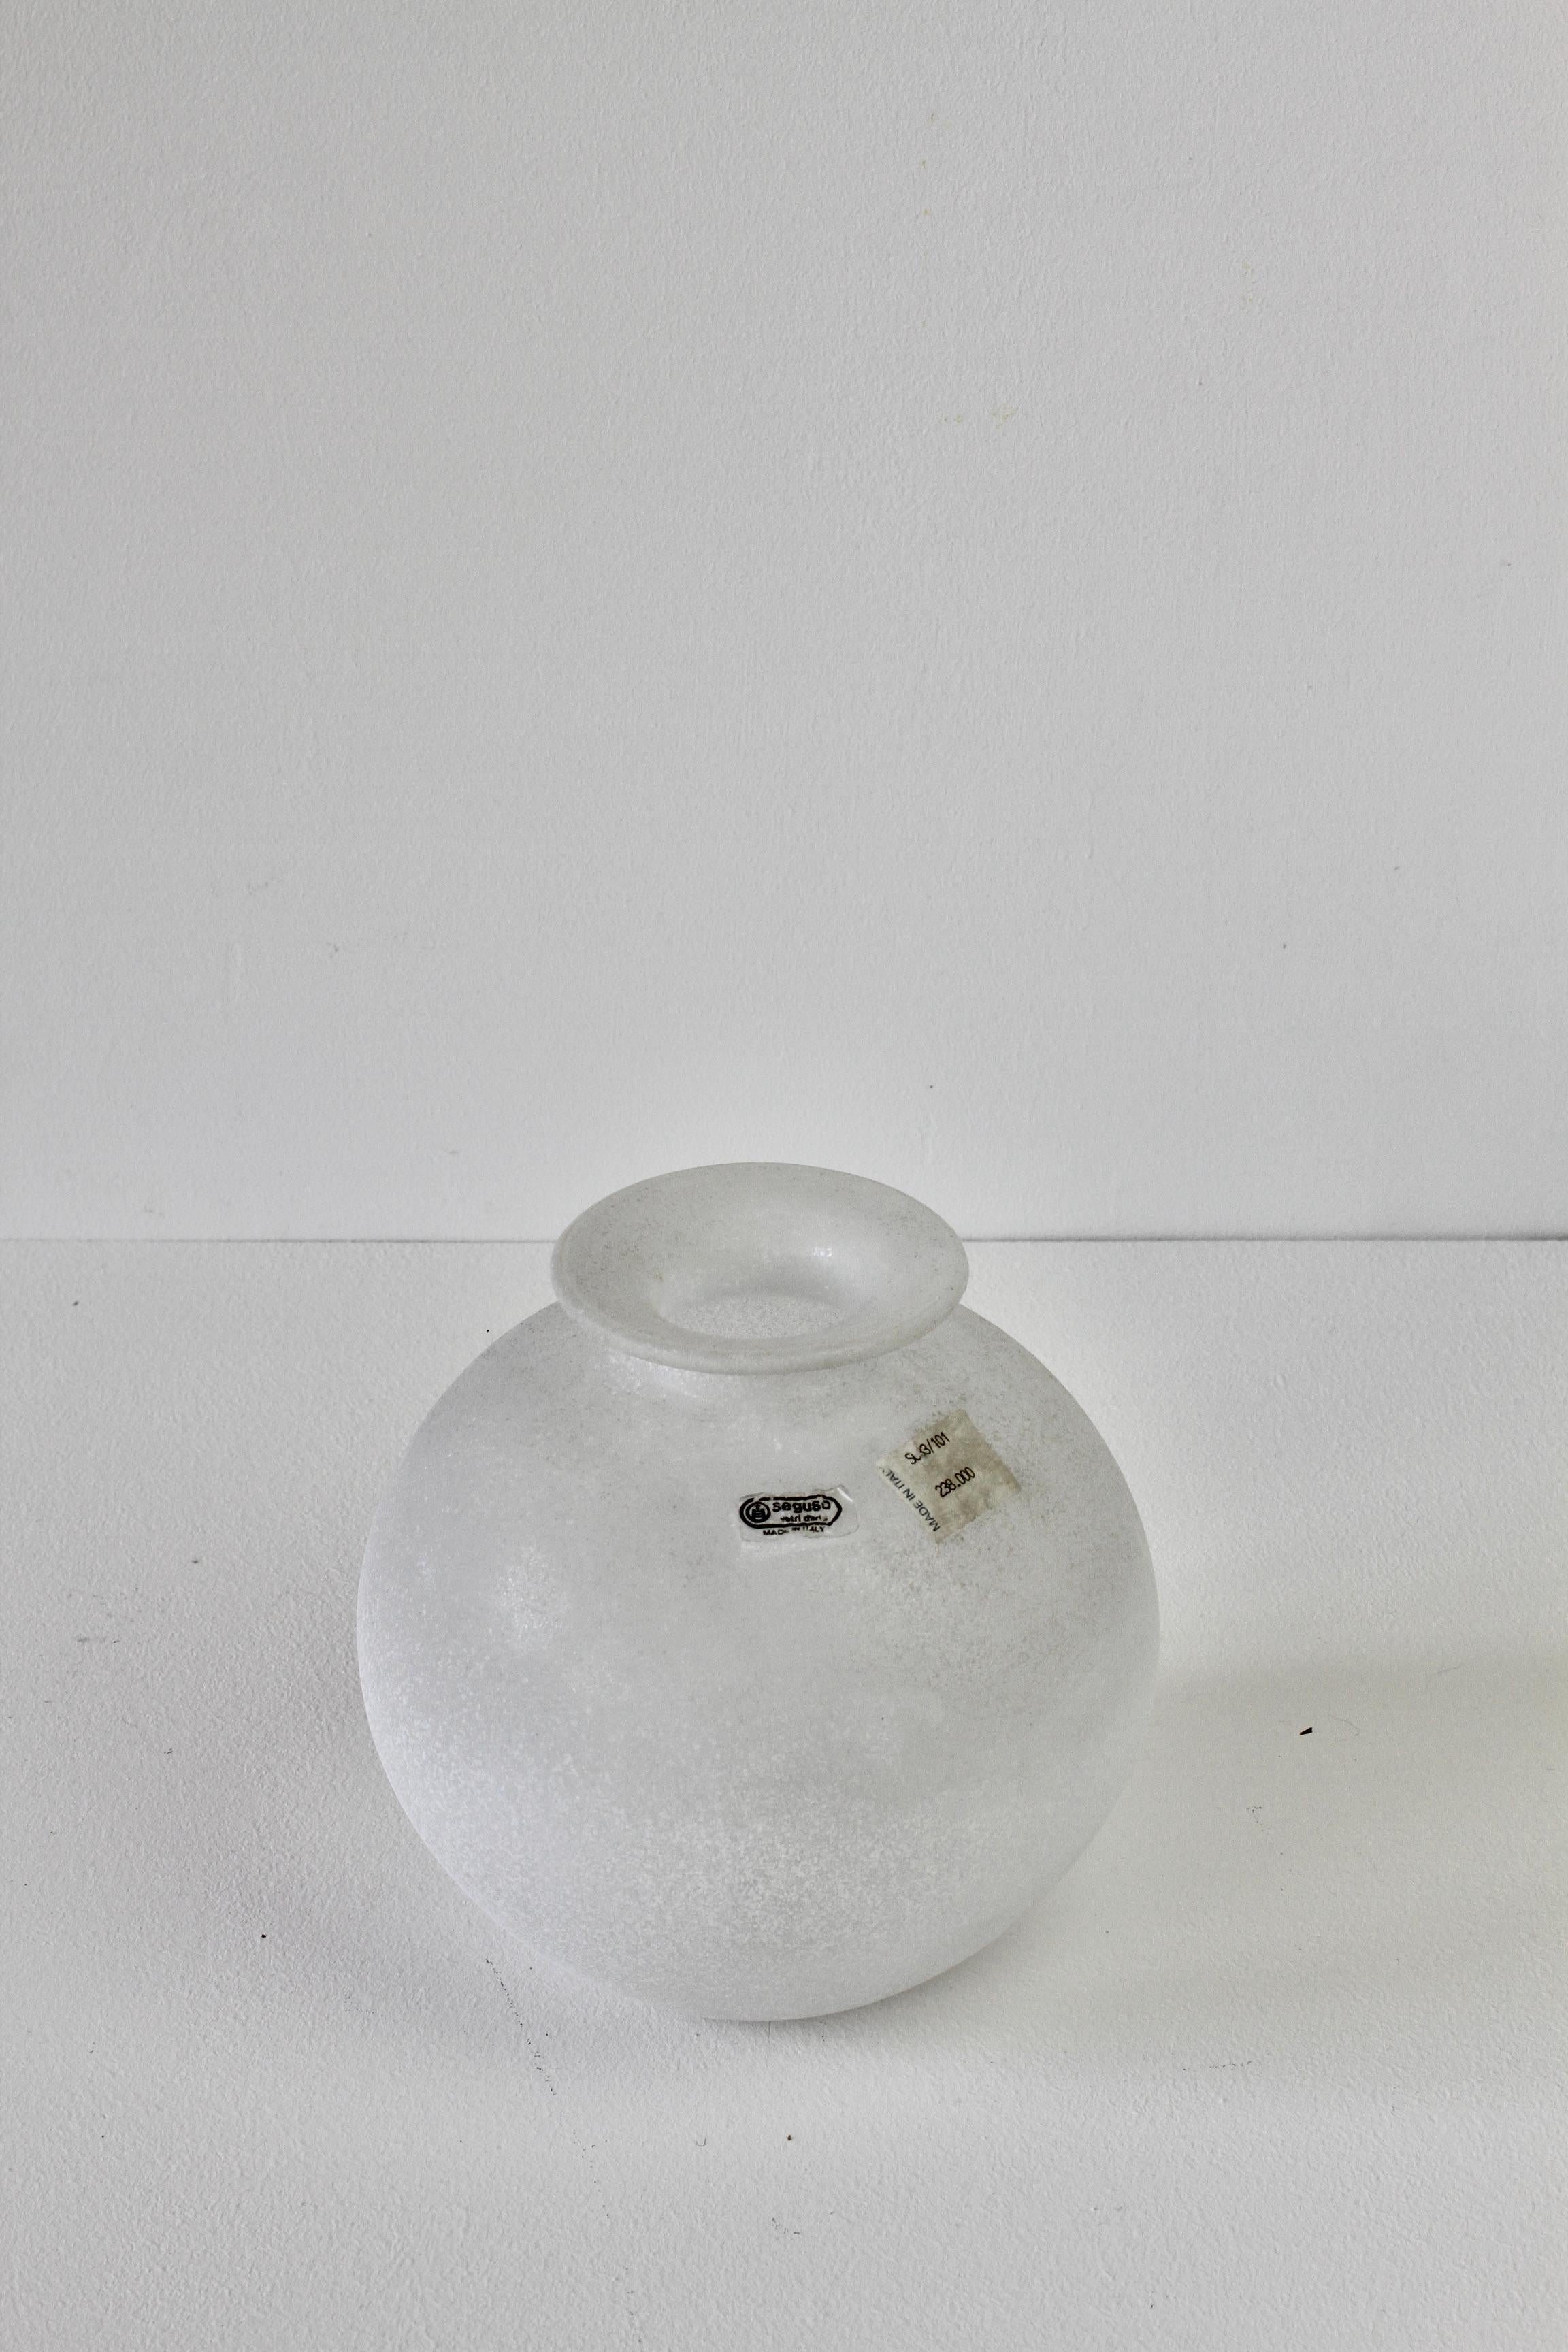 Elegante runde italienische 7,1 Zoll hohe 'a Scavo' Vase aus weißem / farbigem Glas von Seguso Vetri d'Arte Murano, Italien. Die elegante Form und die außergewöhnliche Handwerkskunst der Scavo